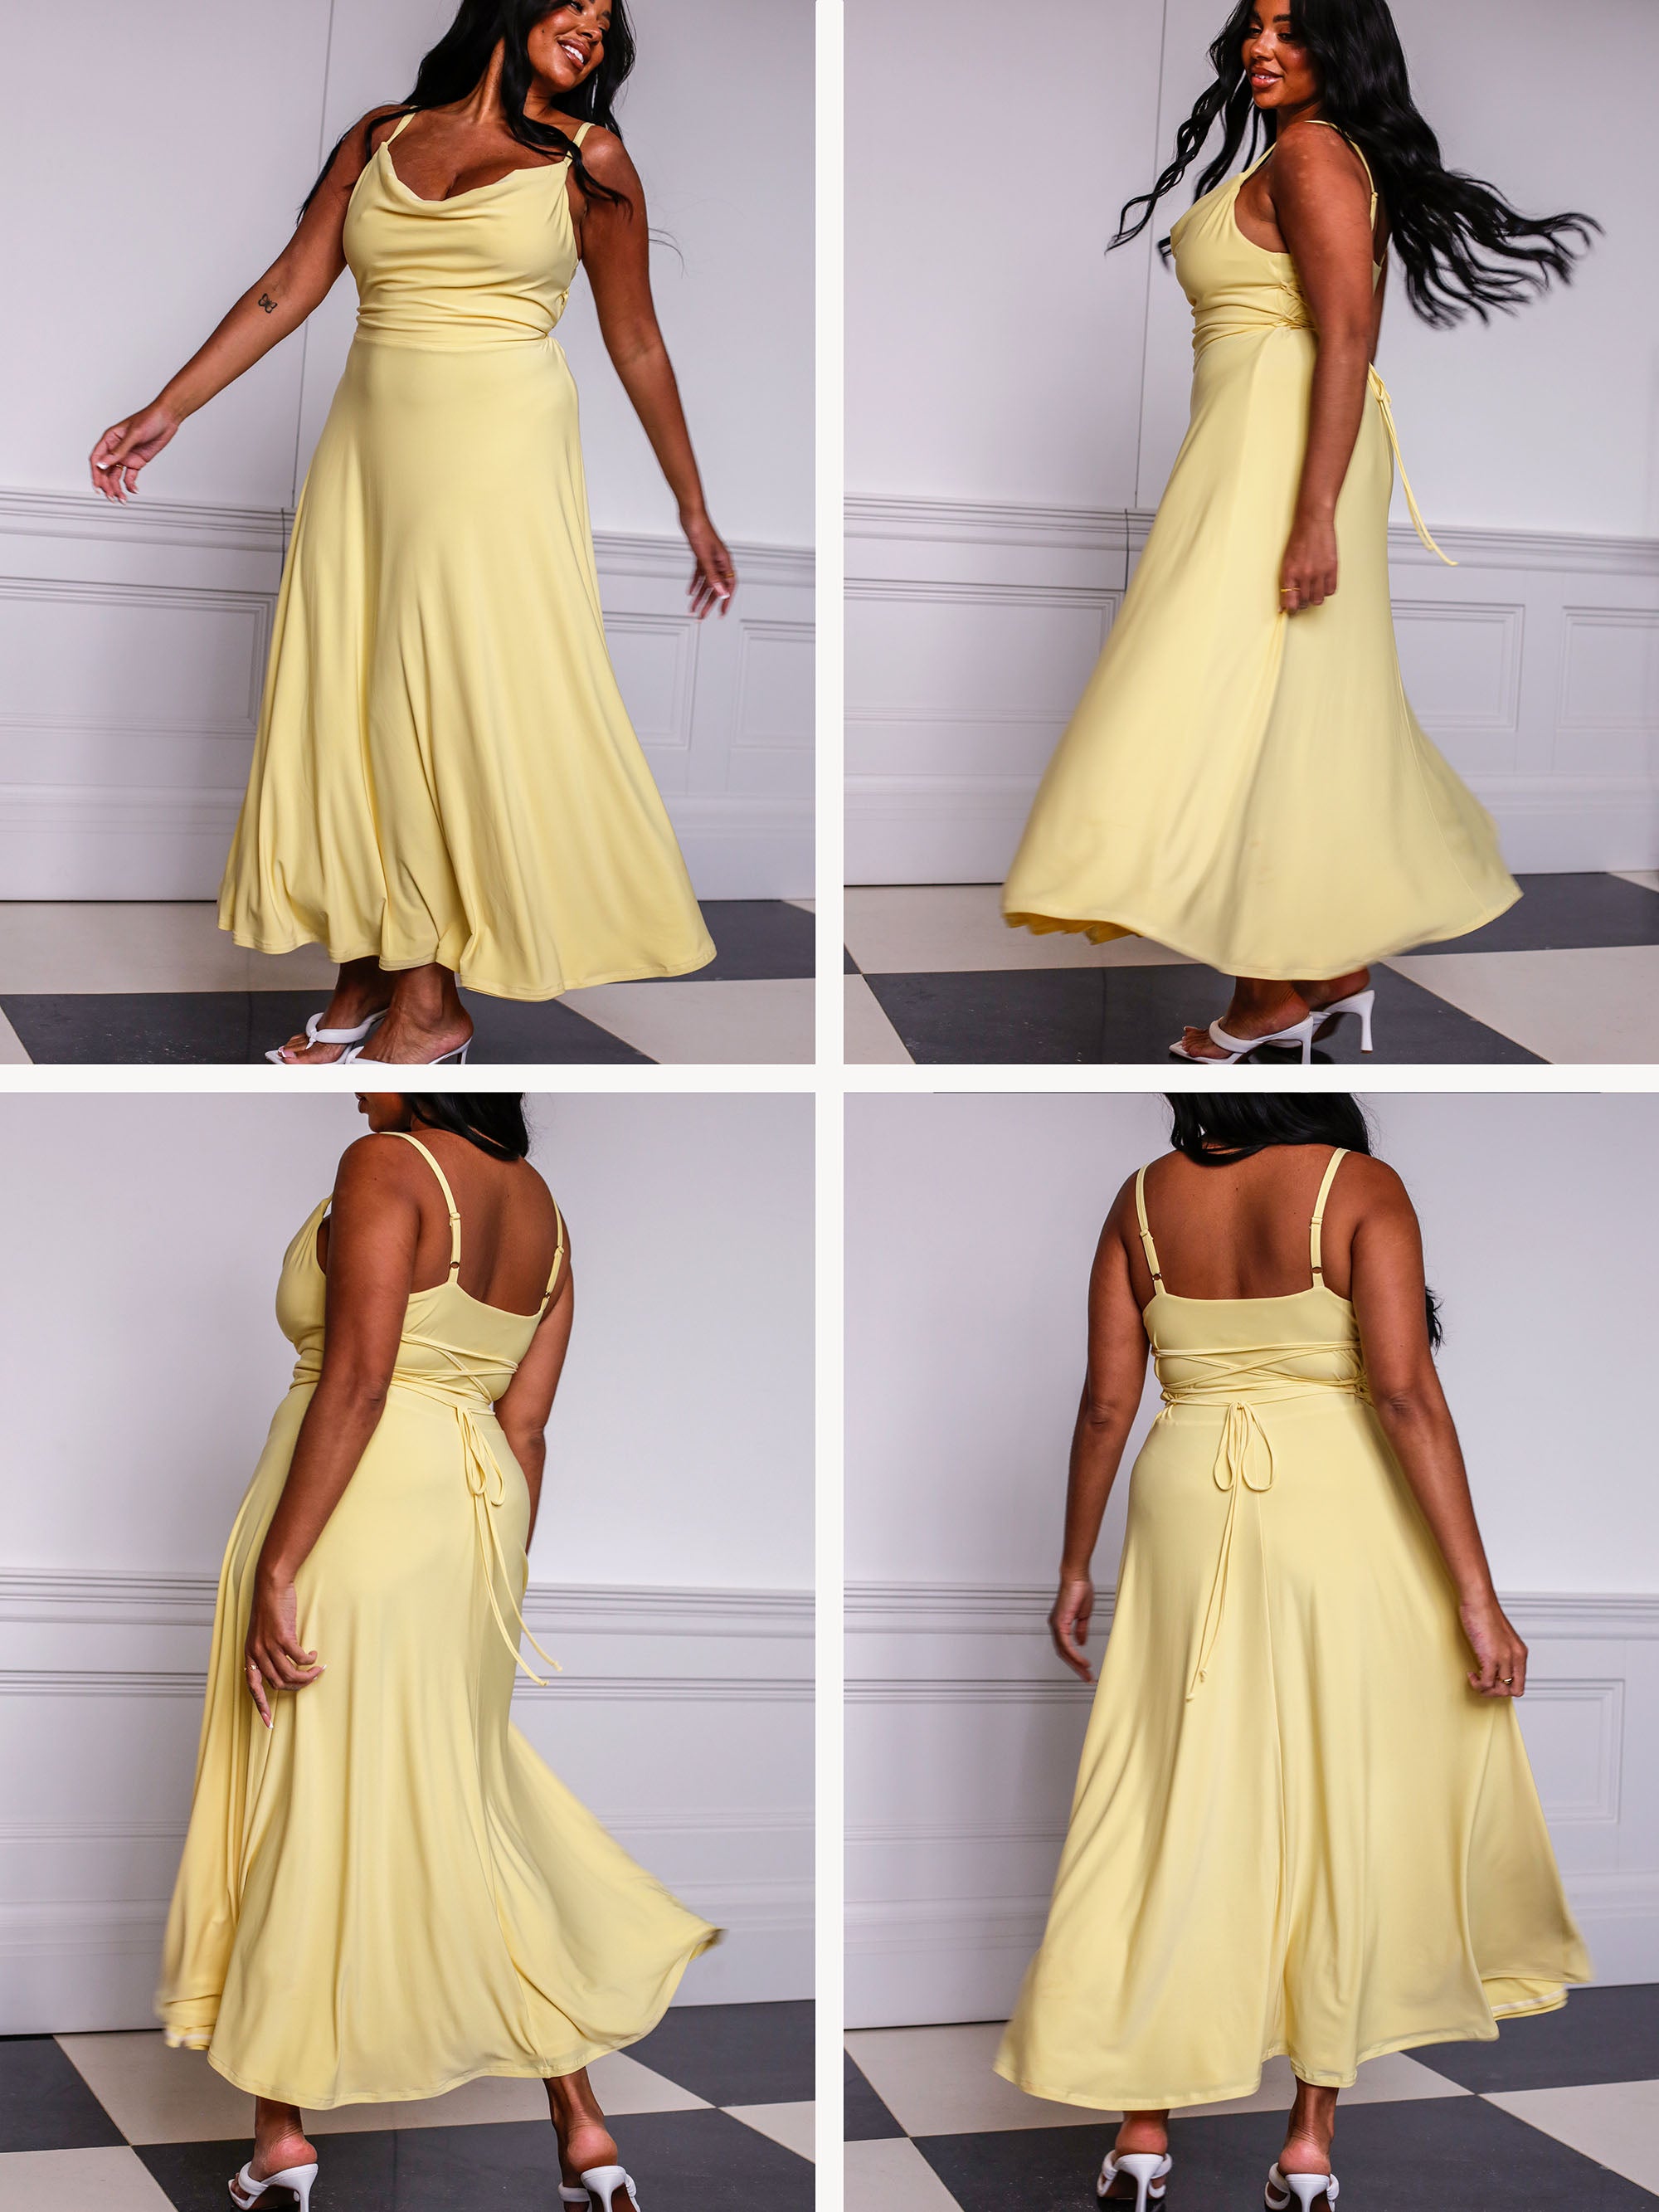 Introducing the Lulah Maxi Dress 🍋 - AYM Studio